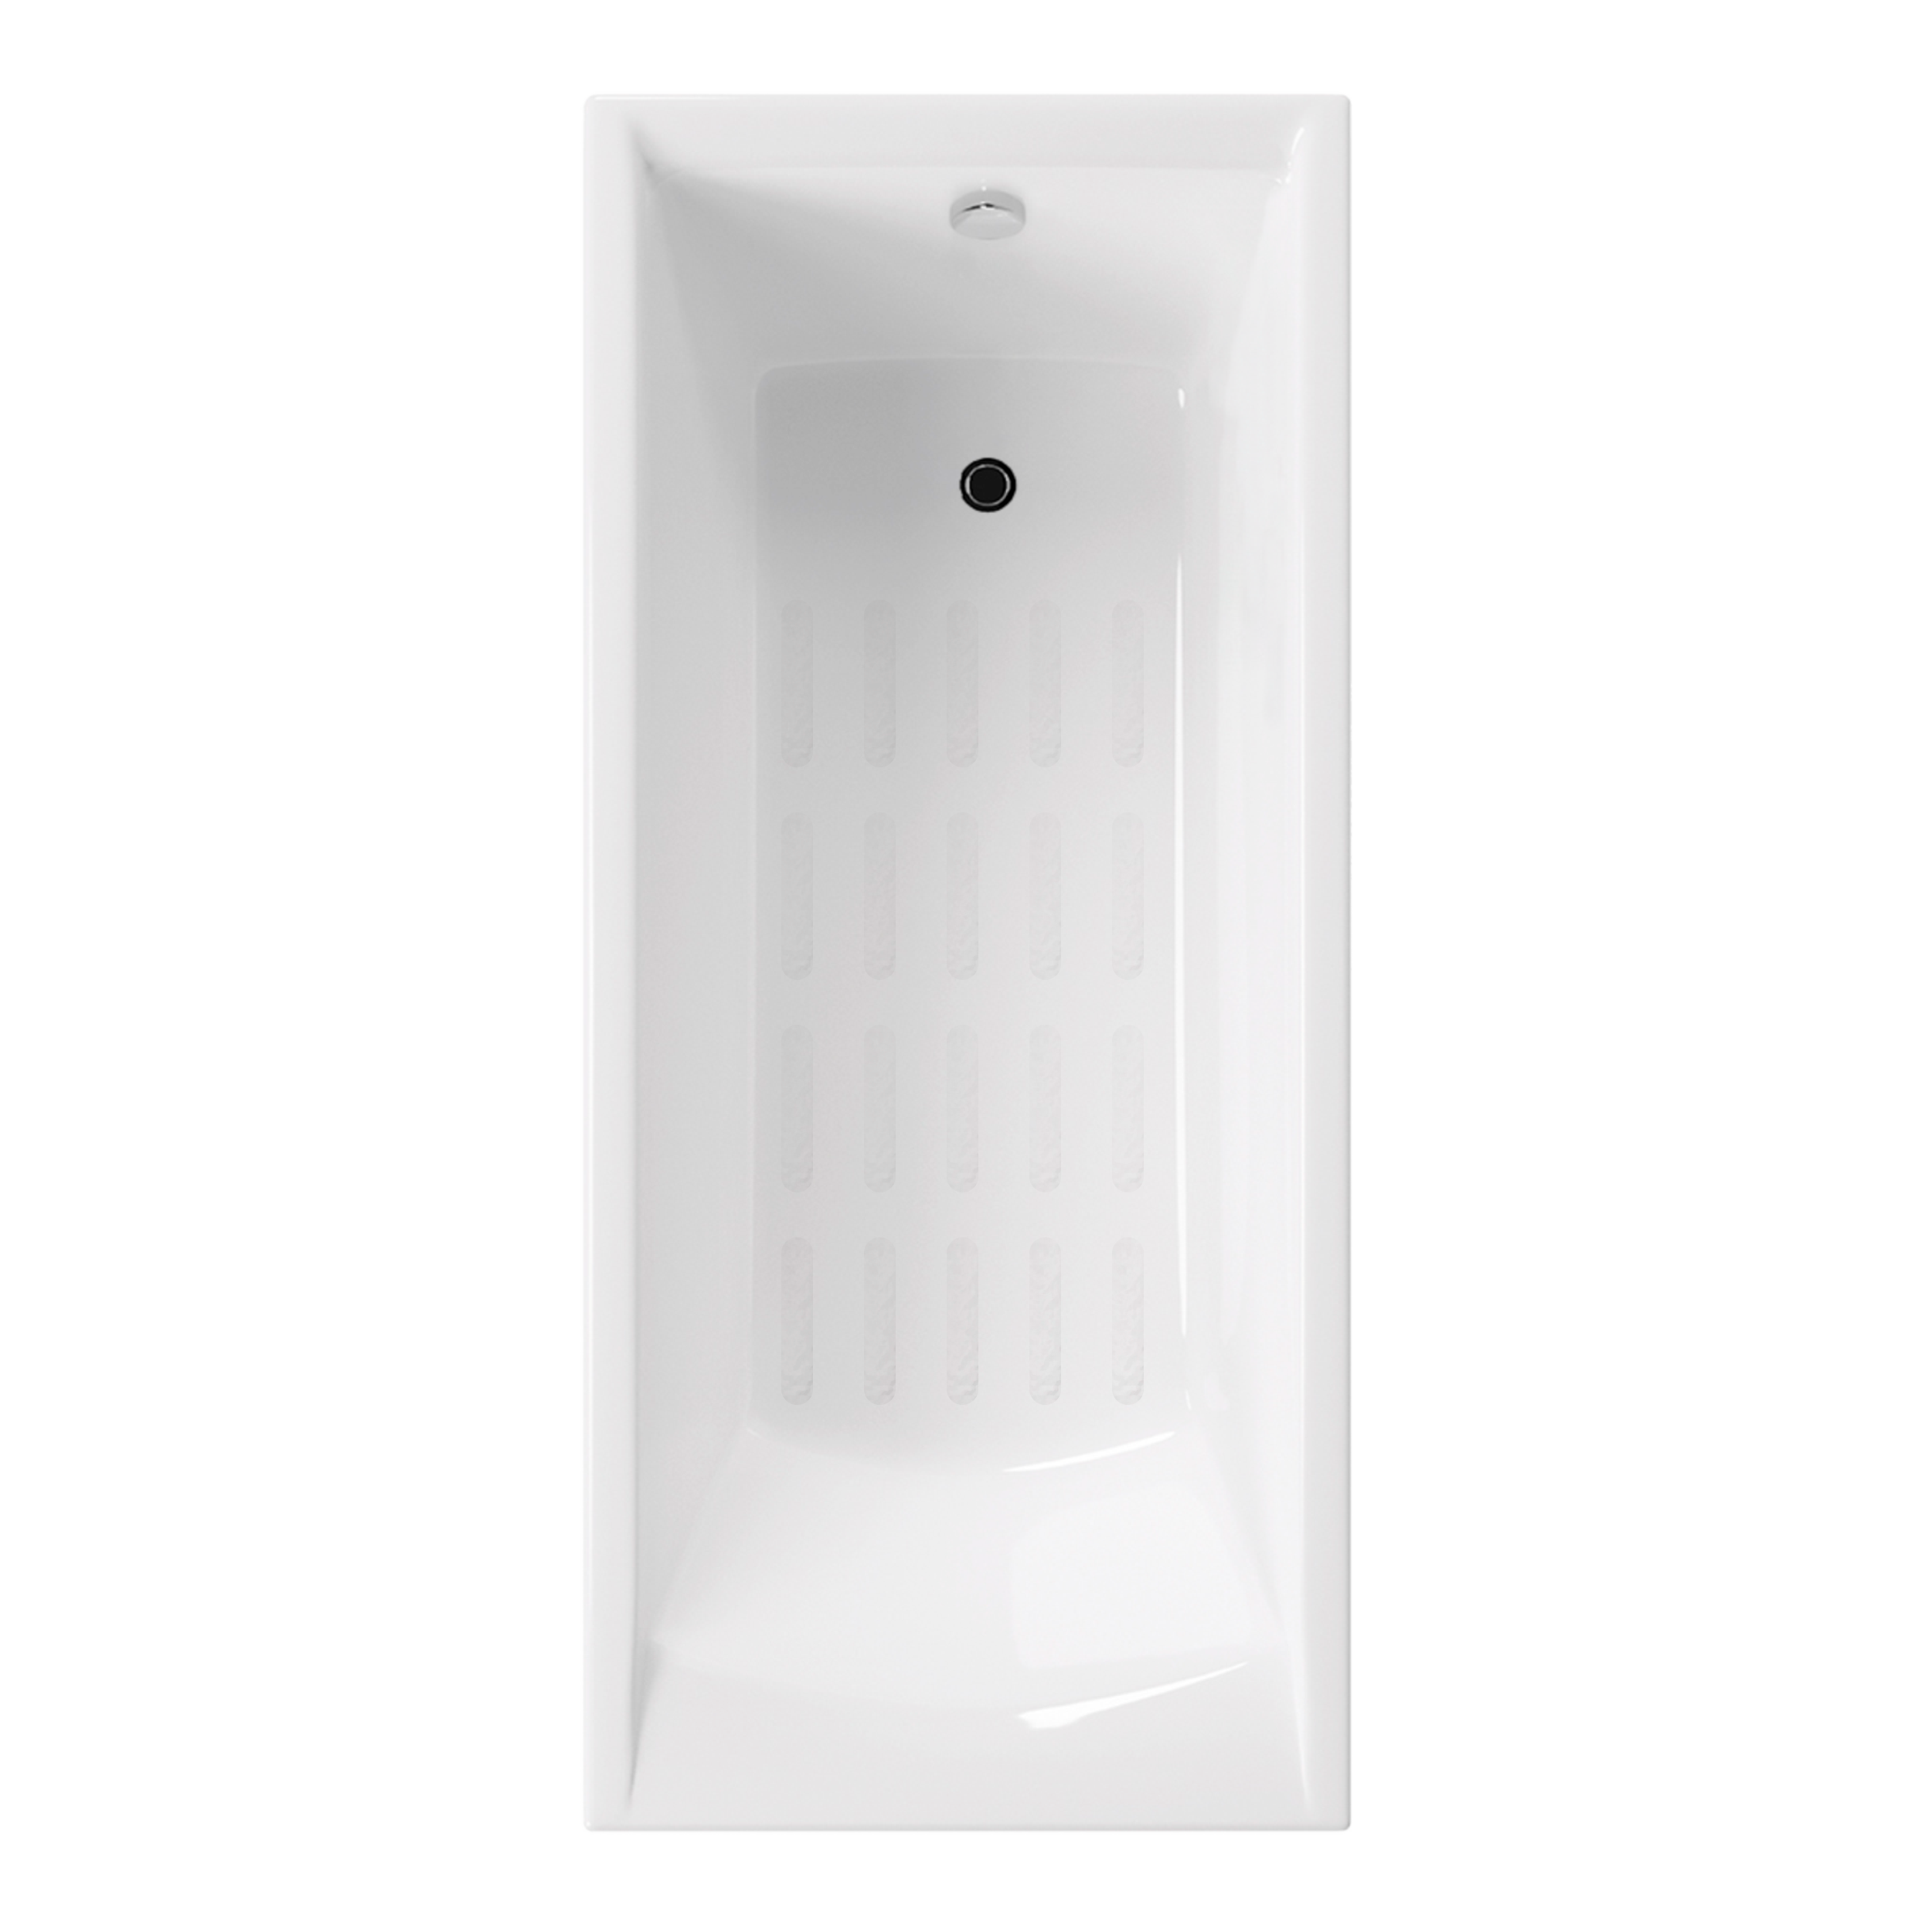 Ванна чугунная Delice Prestige 170x75 DLR230625-AS белая, размер 170x75, цвет белый